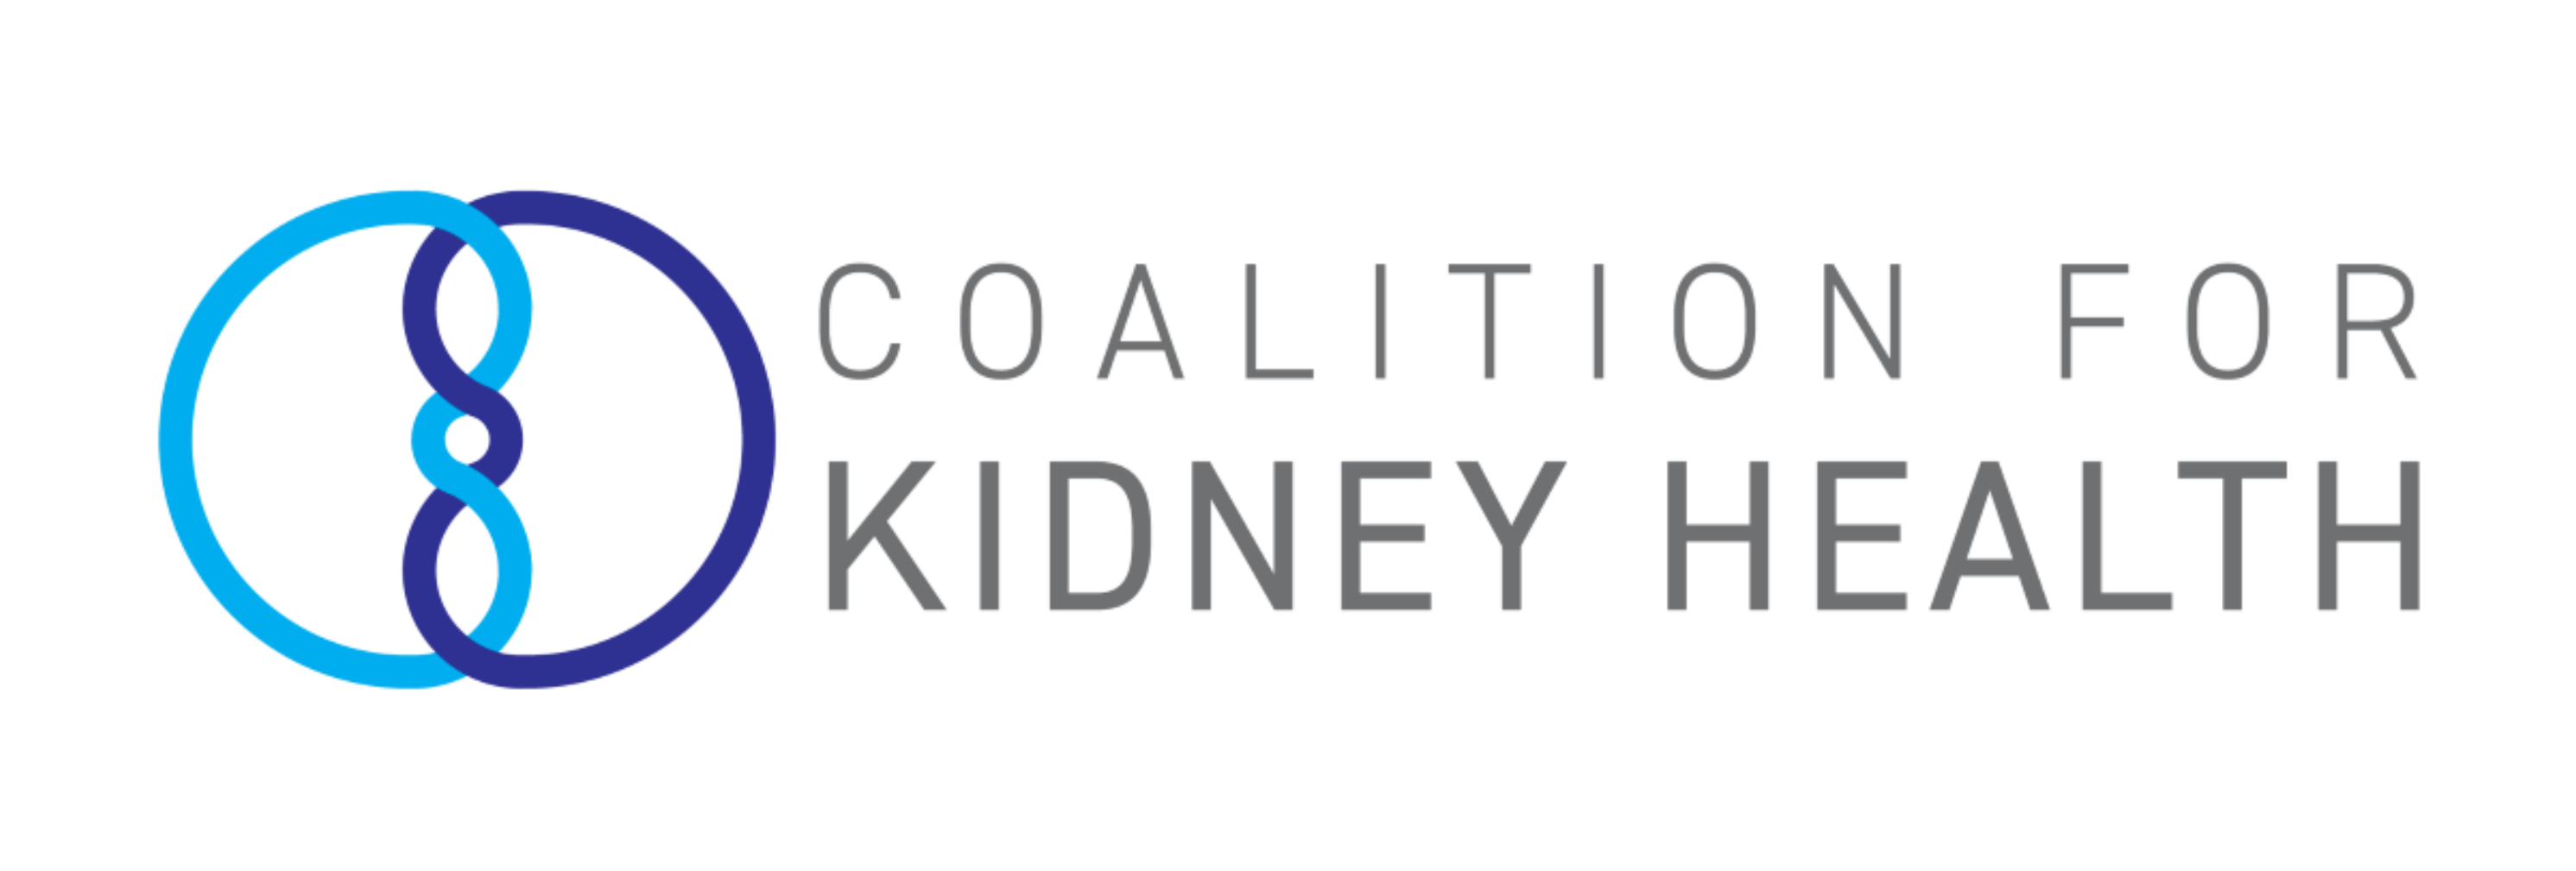 Coalition for Kidney Health logo